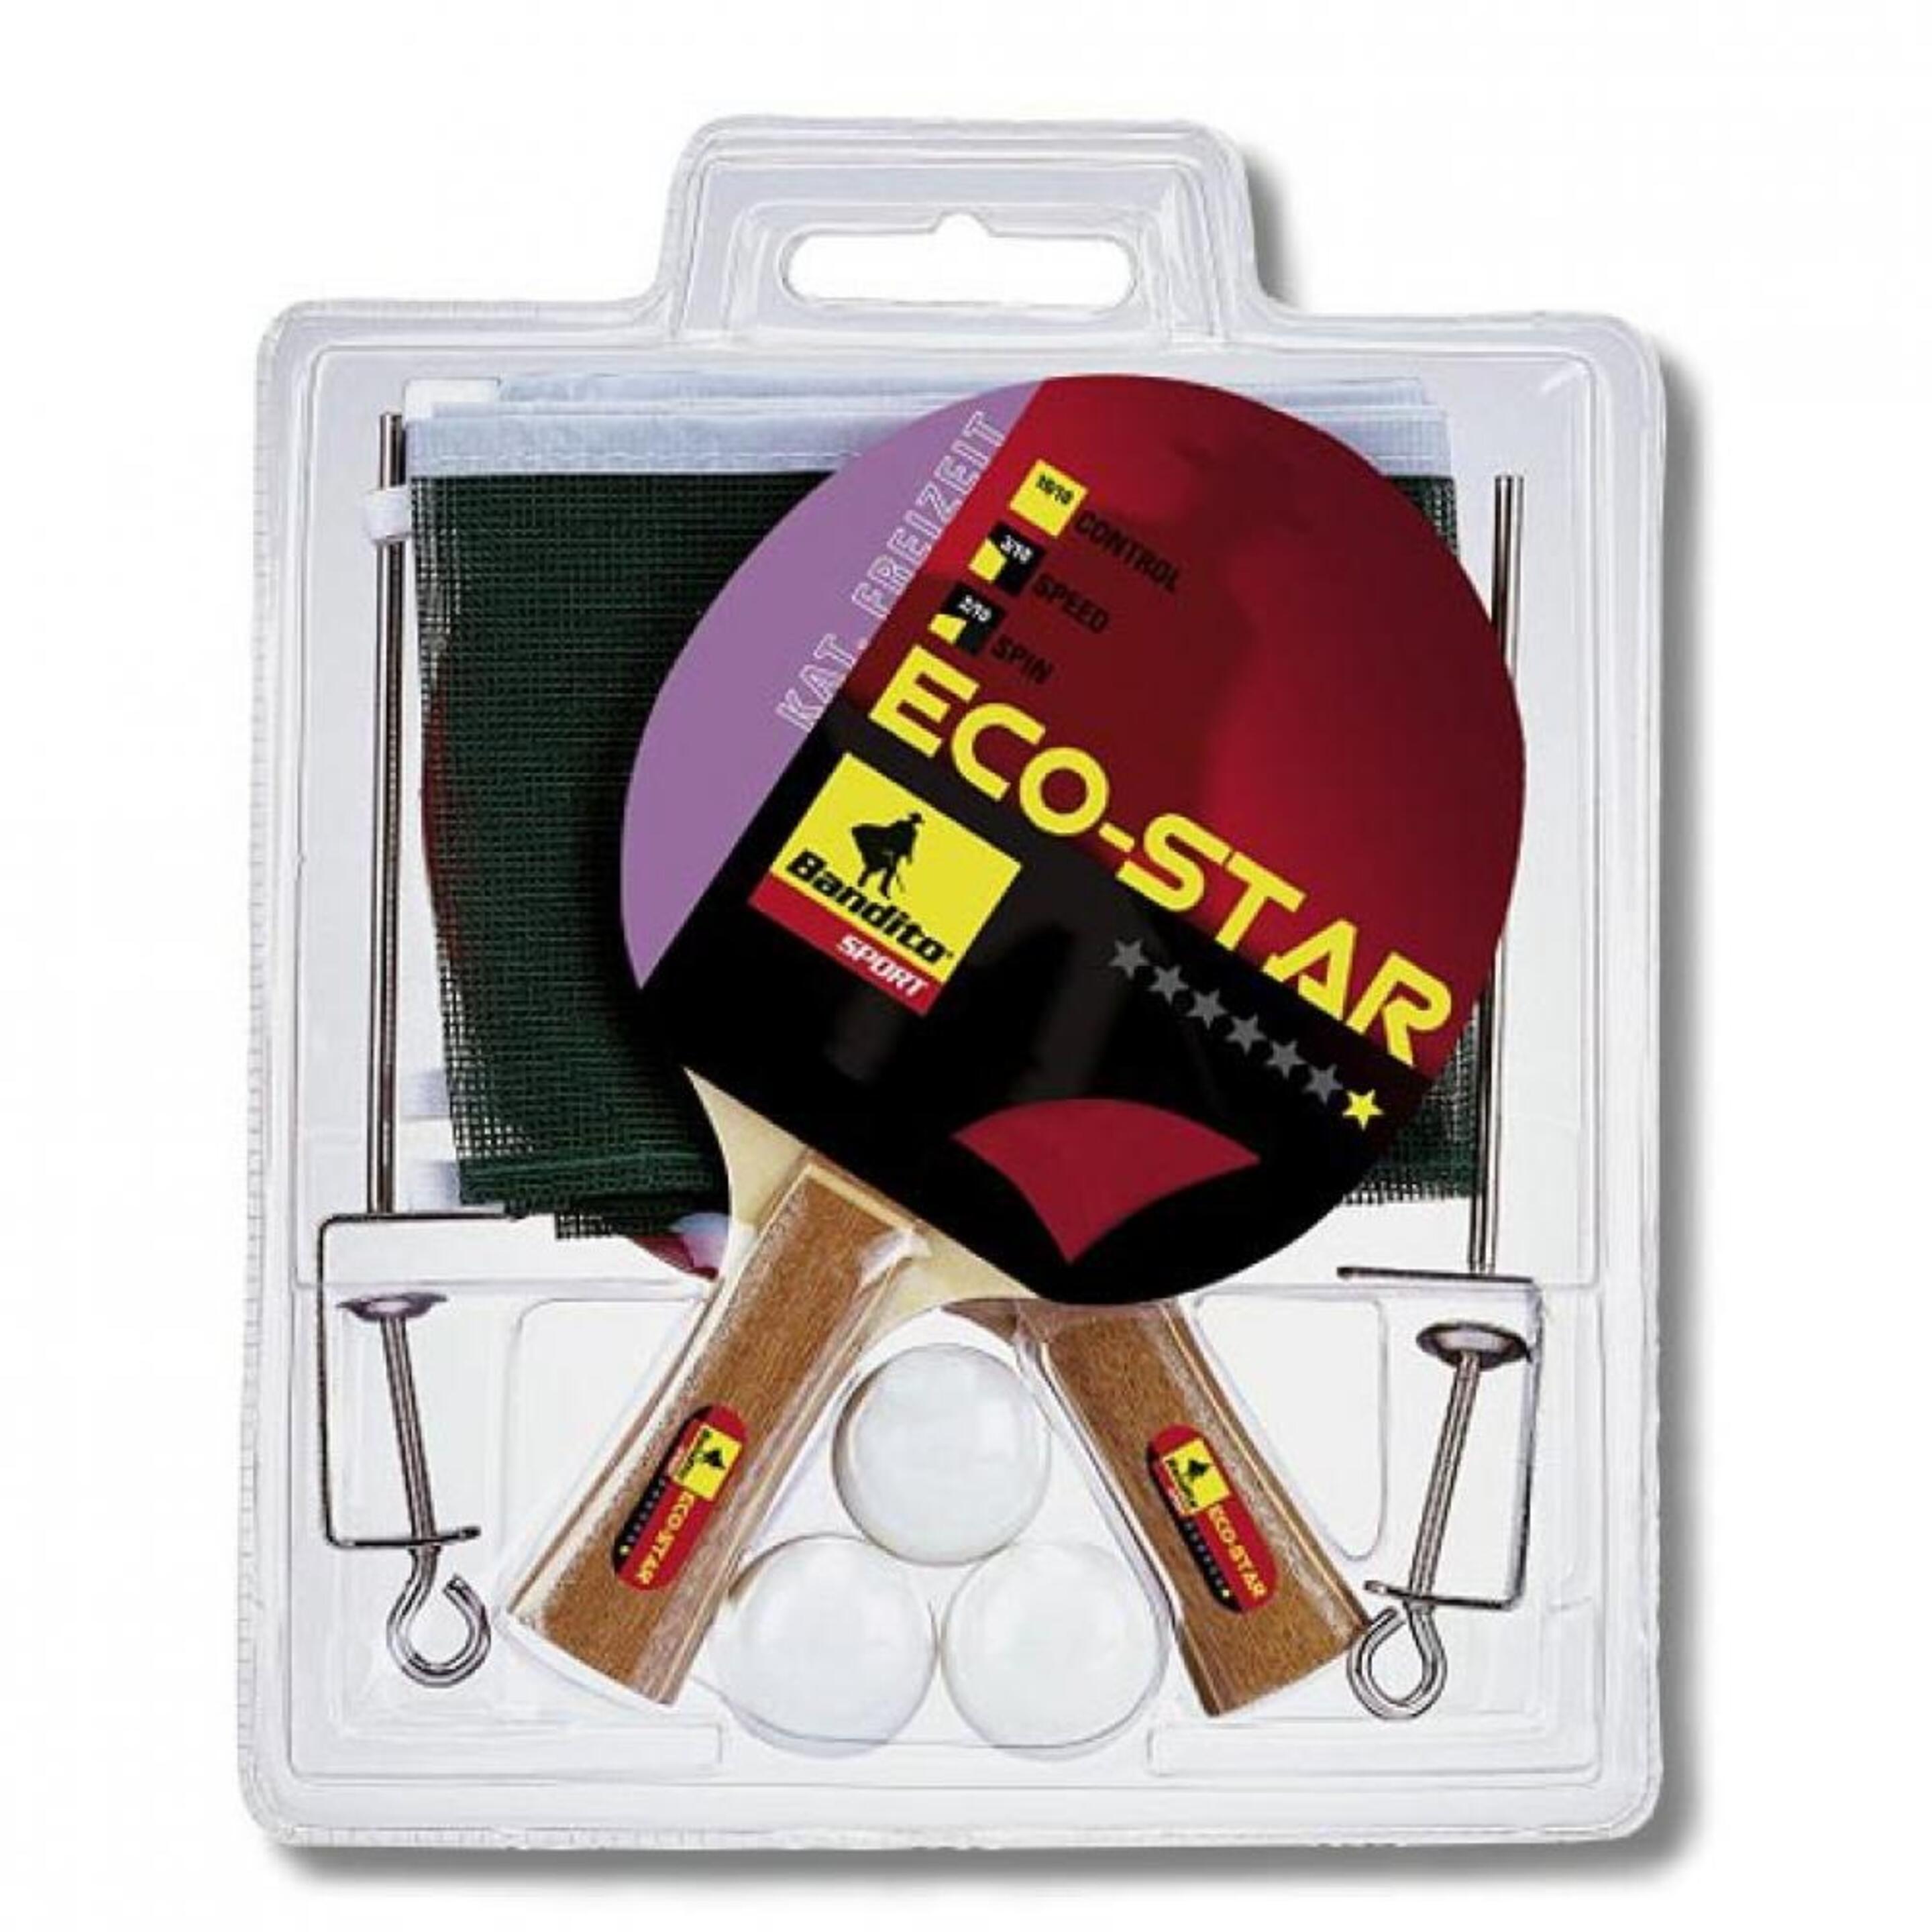 Pack 2 Pala Ping Pong + 3 Bolas + Red Bandito Sport Eco-star 4110.01 - negro - 